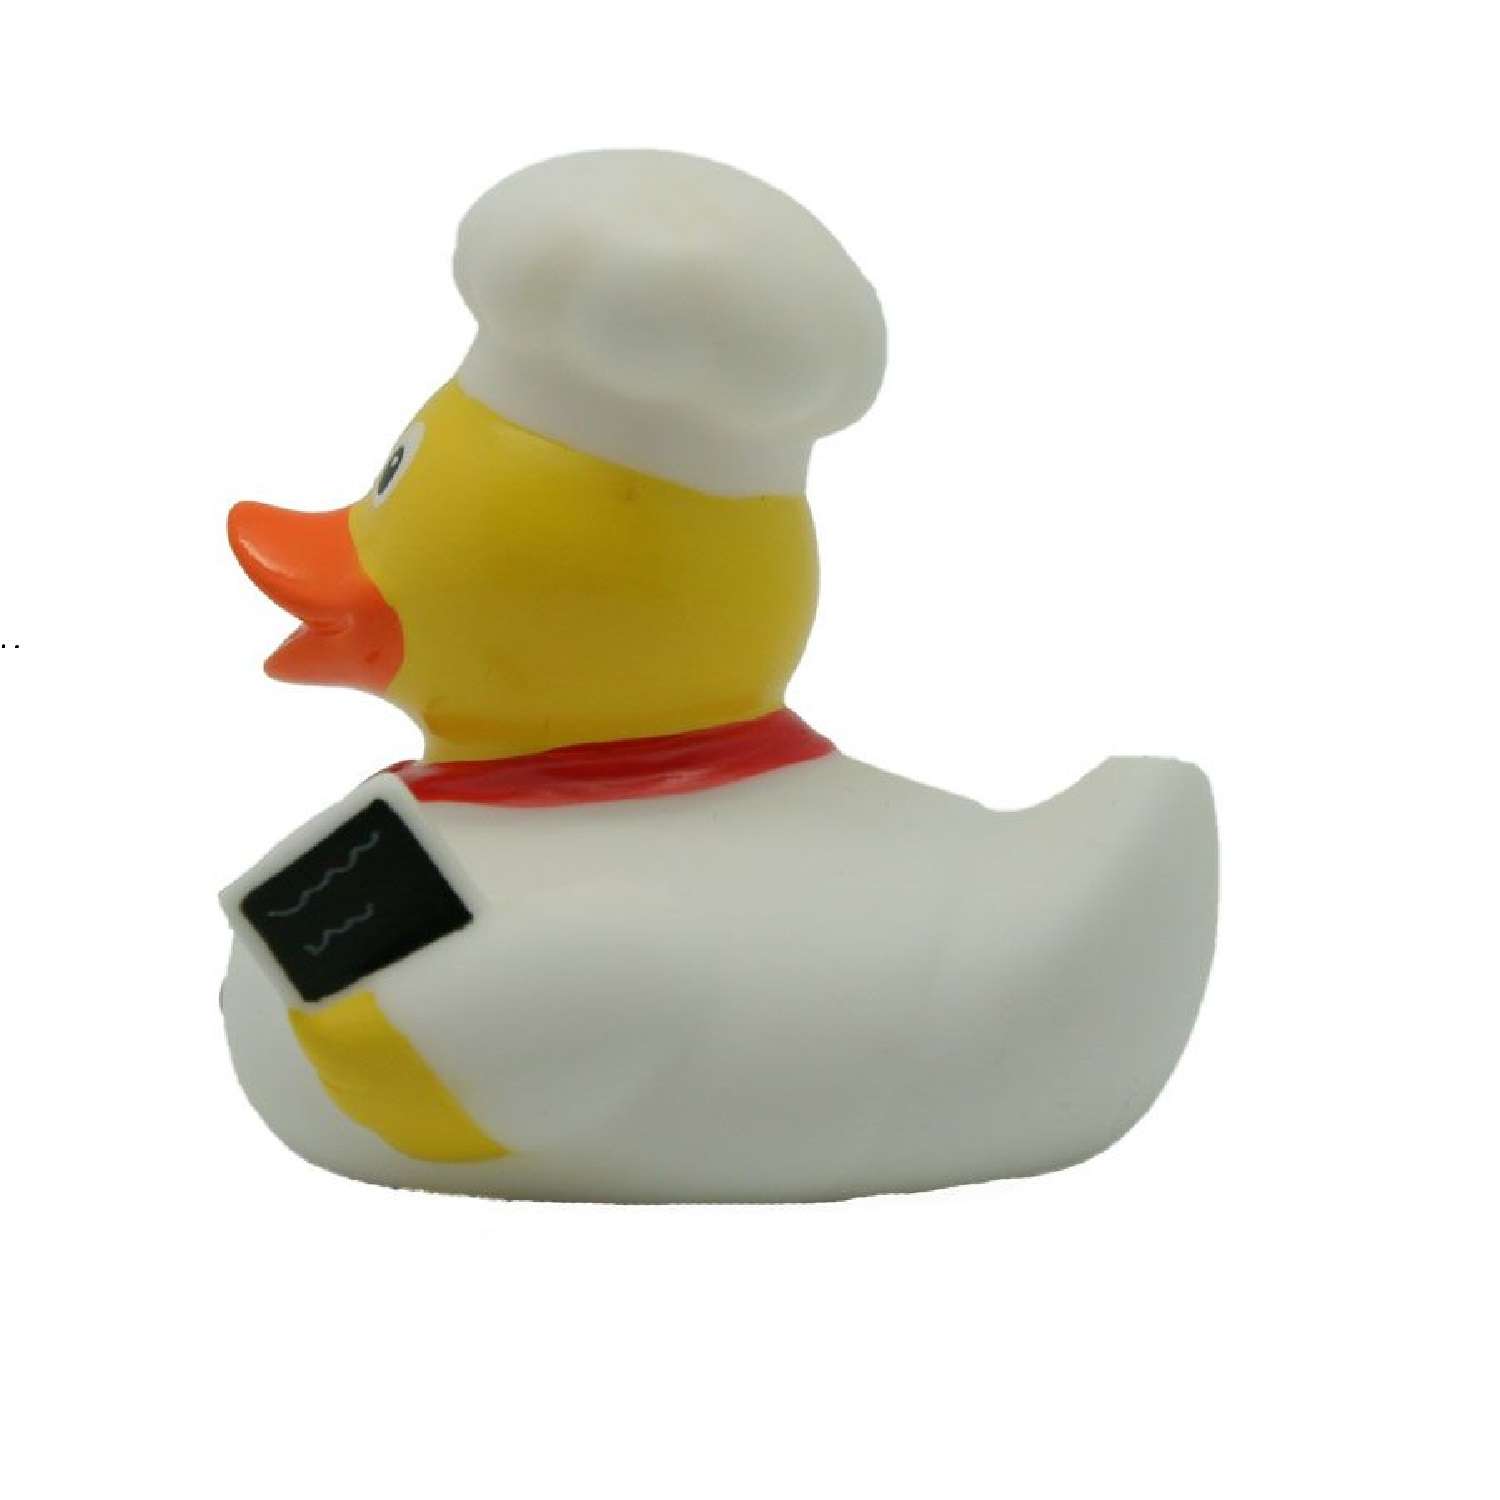 Игрушка Funny ducks для ванной Повар уточка 1898 - фото 3